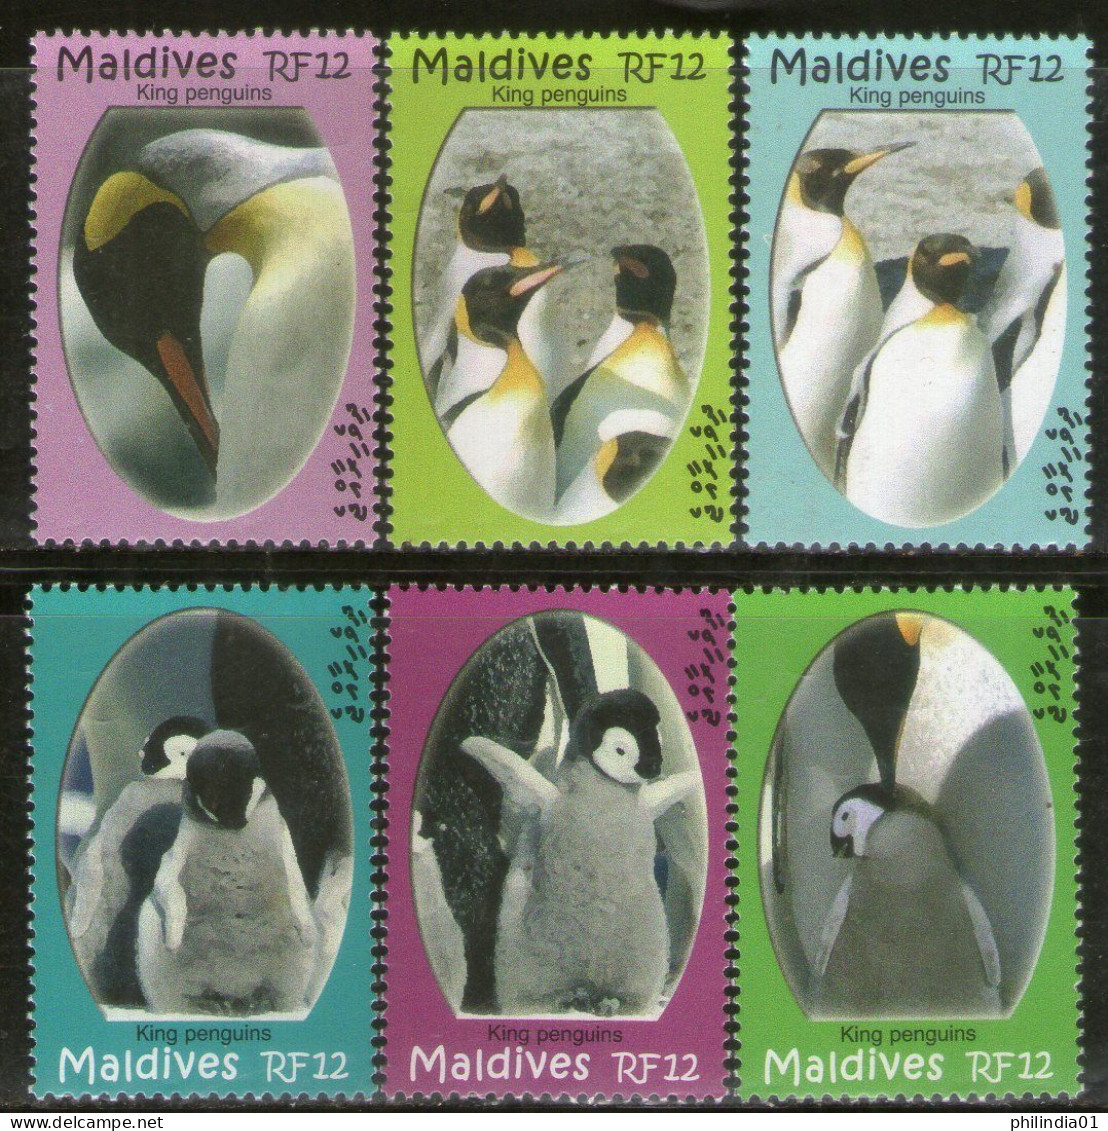 Maldives 2007 King Penguins Birds Marine Life Sc 2938 6v MNH # 500 - Pingueinos